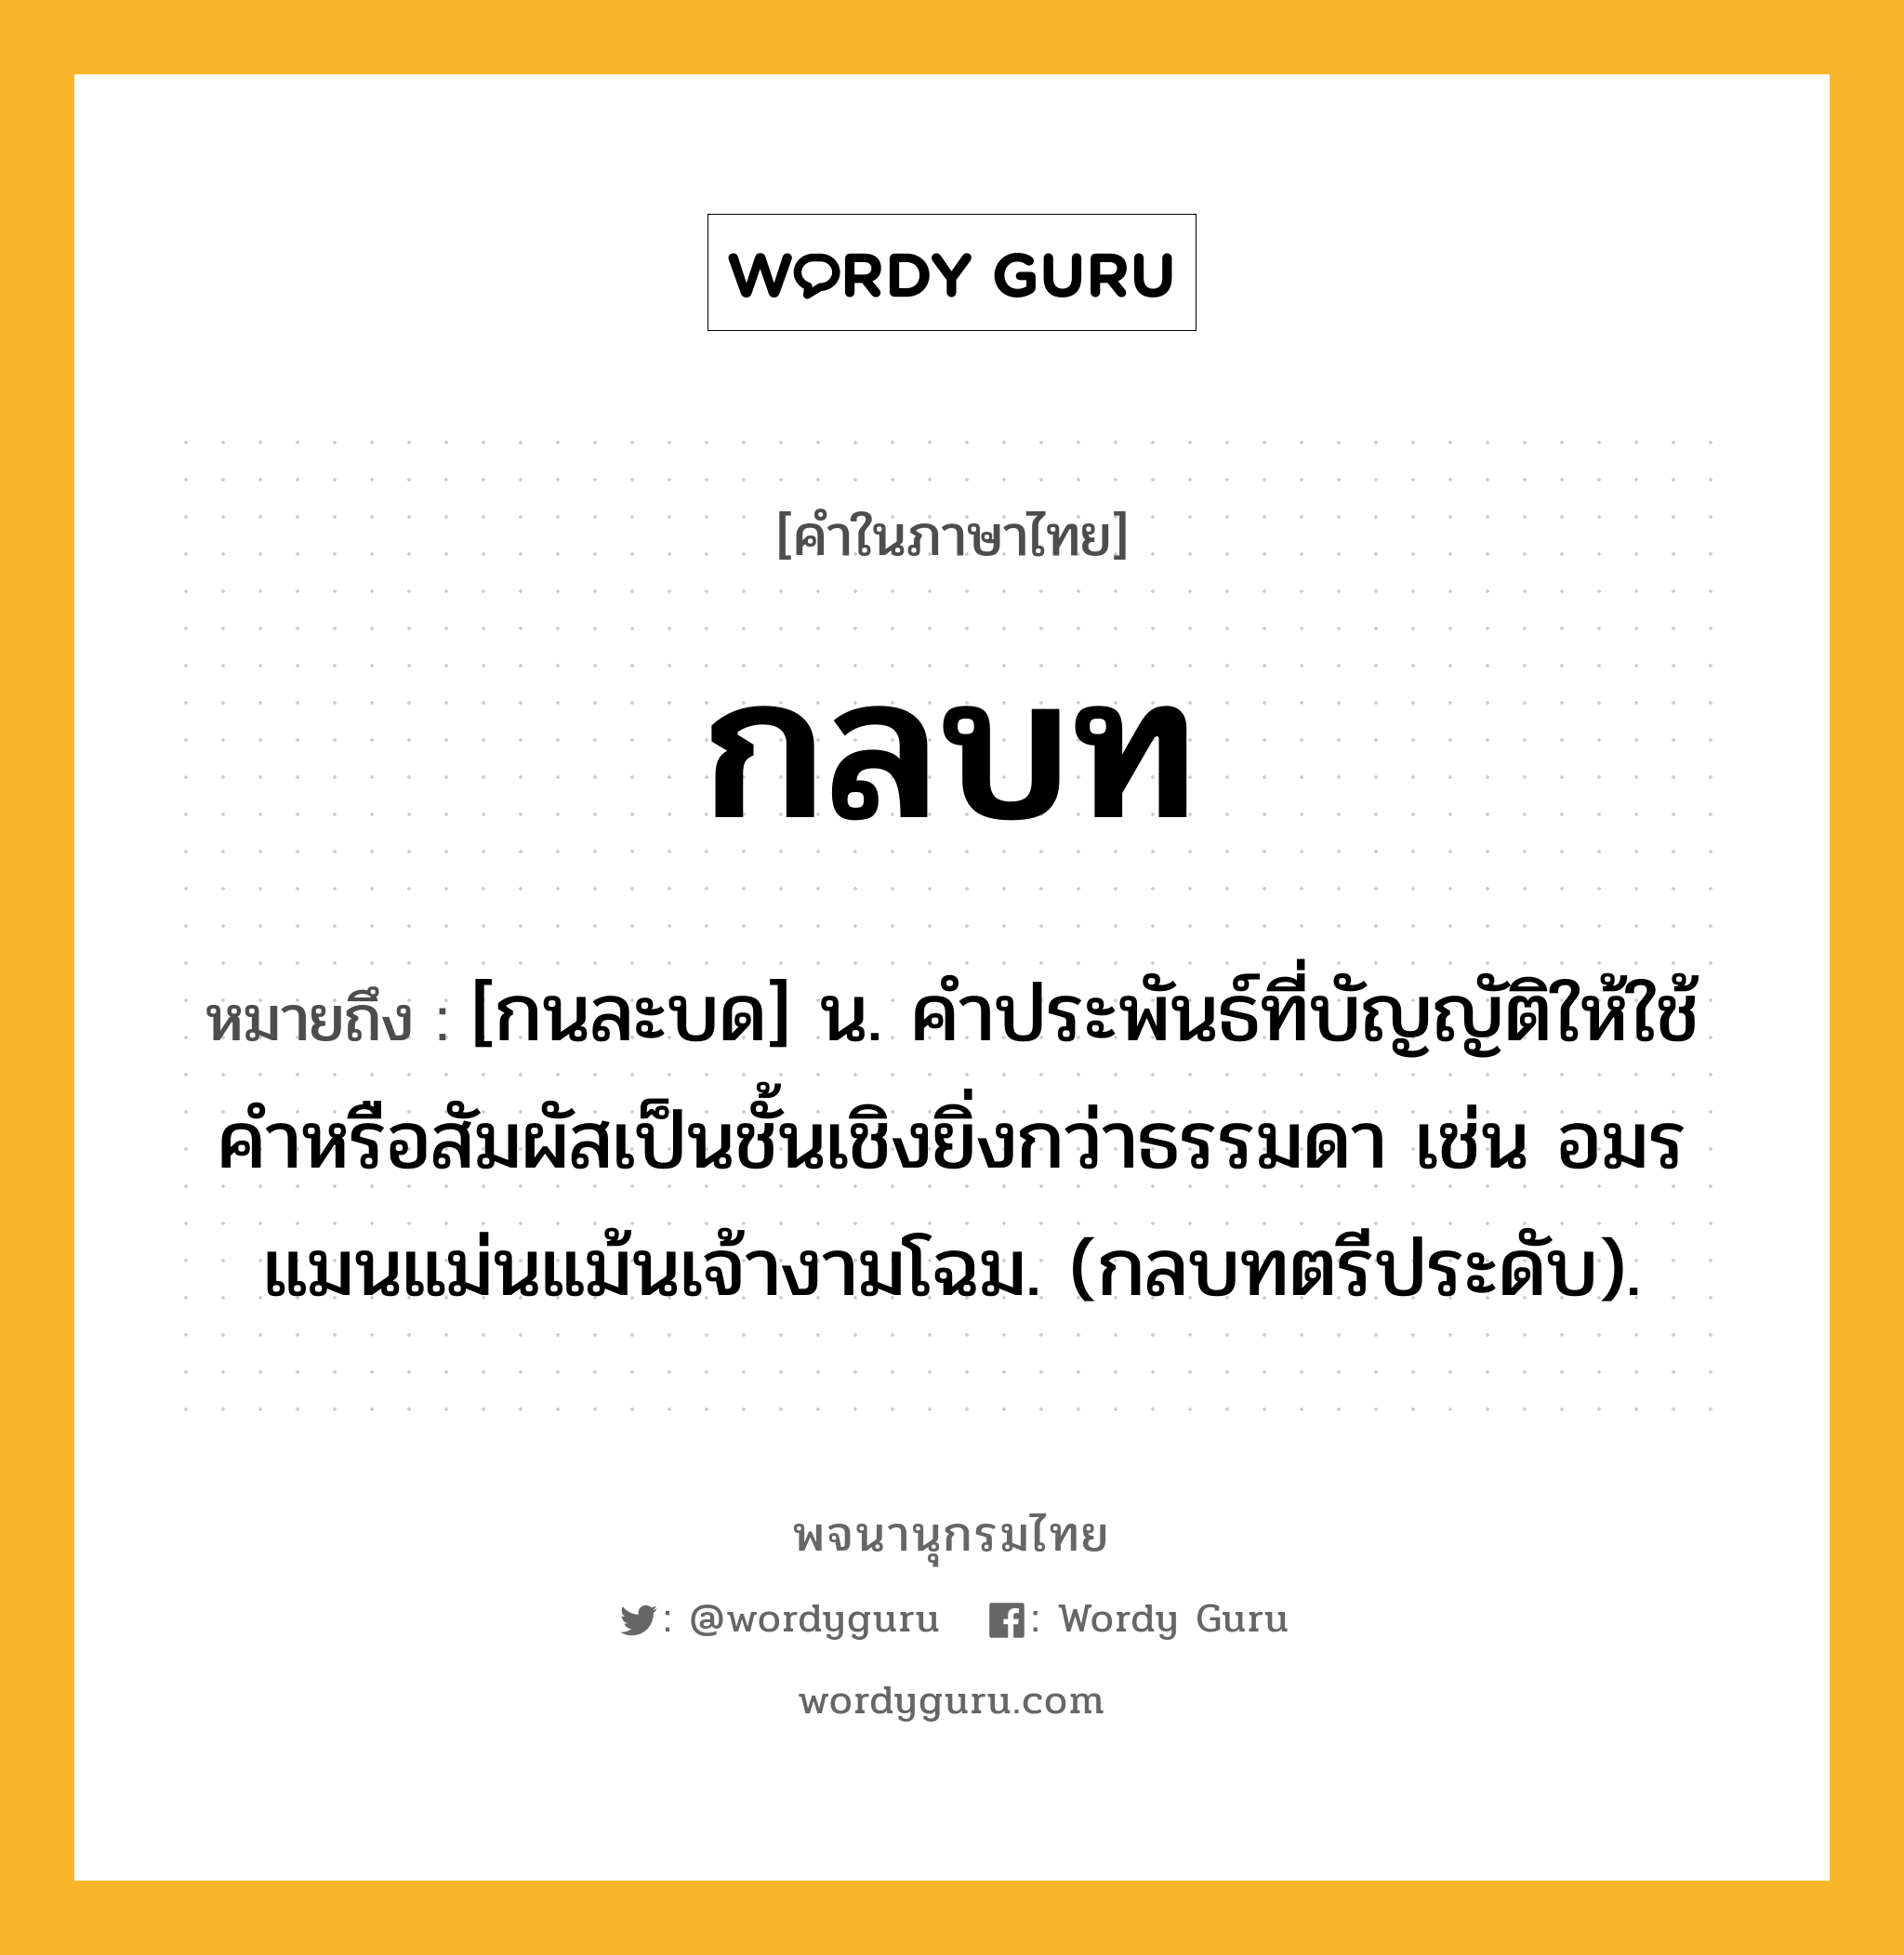 กลบท หมายถึงอะไร?, คำในภาษาไทย กลบท หมายถึง [กนละบด] น. คําประพันธ์ที่บัญญัติให้ใช้คําหรือสัมผัสเป็นชั้นเชิงยิ่งกว่าธรรมดา เช่น อมรแมนแม่นแม้นเจ้างามโฉม. (กลบทตรีประดับ).